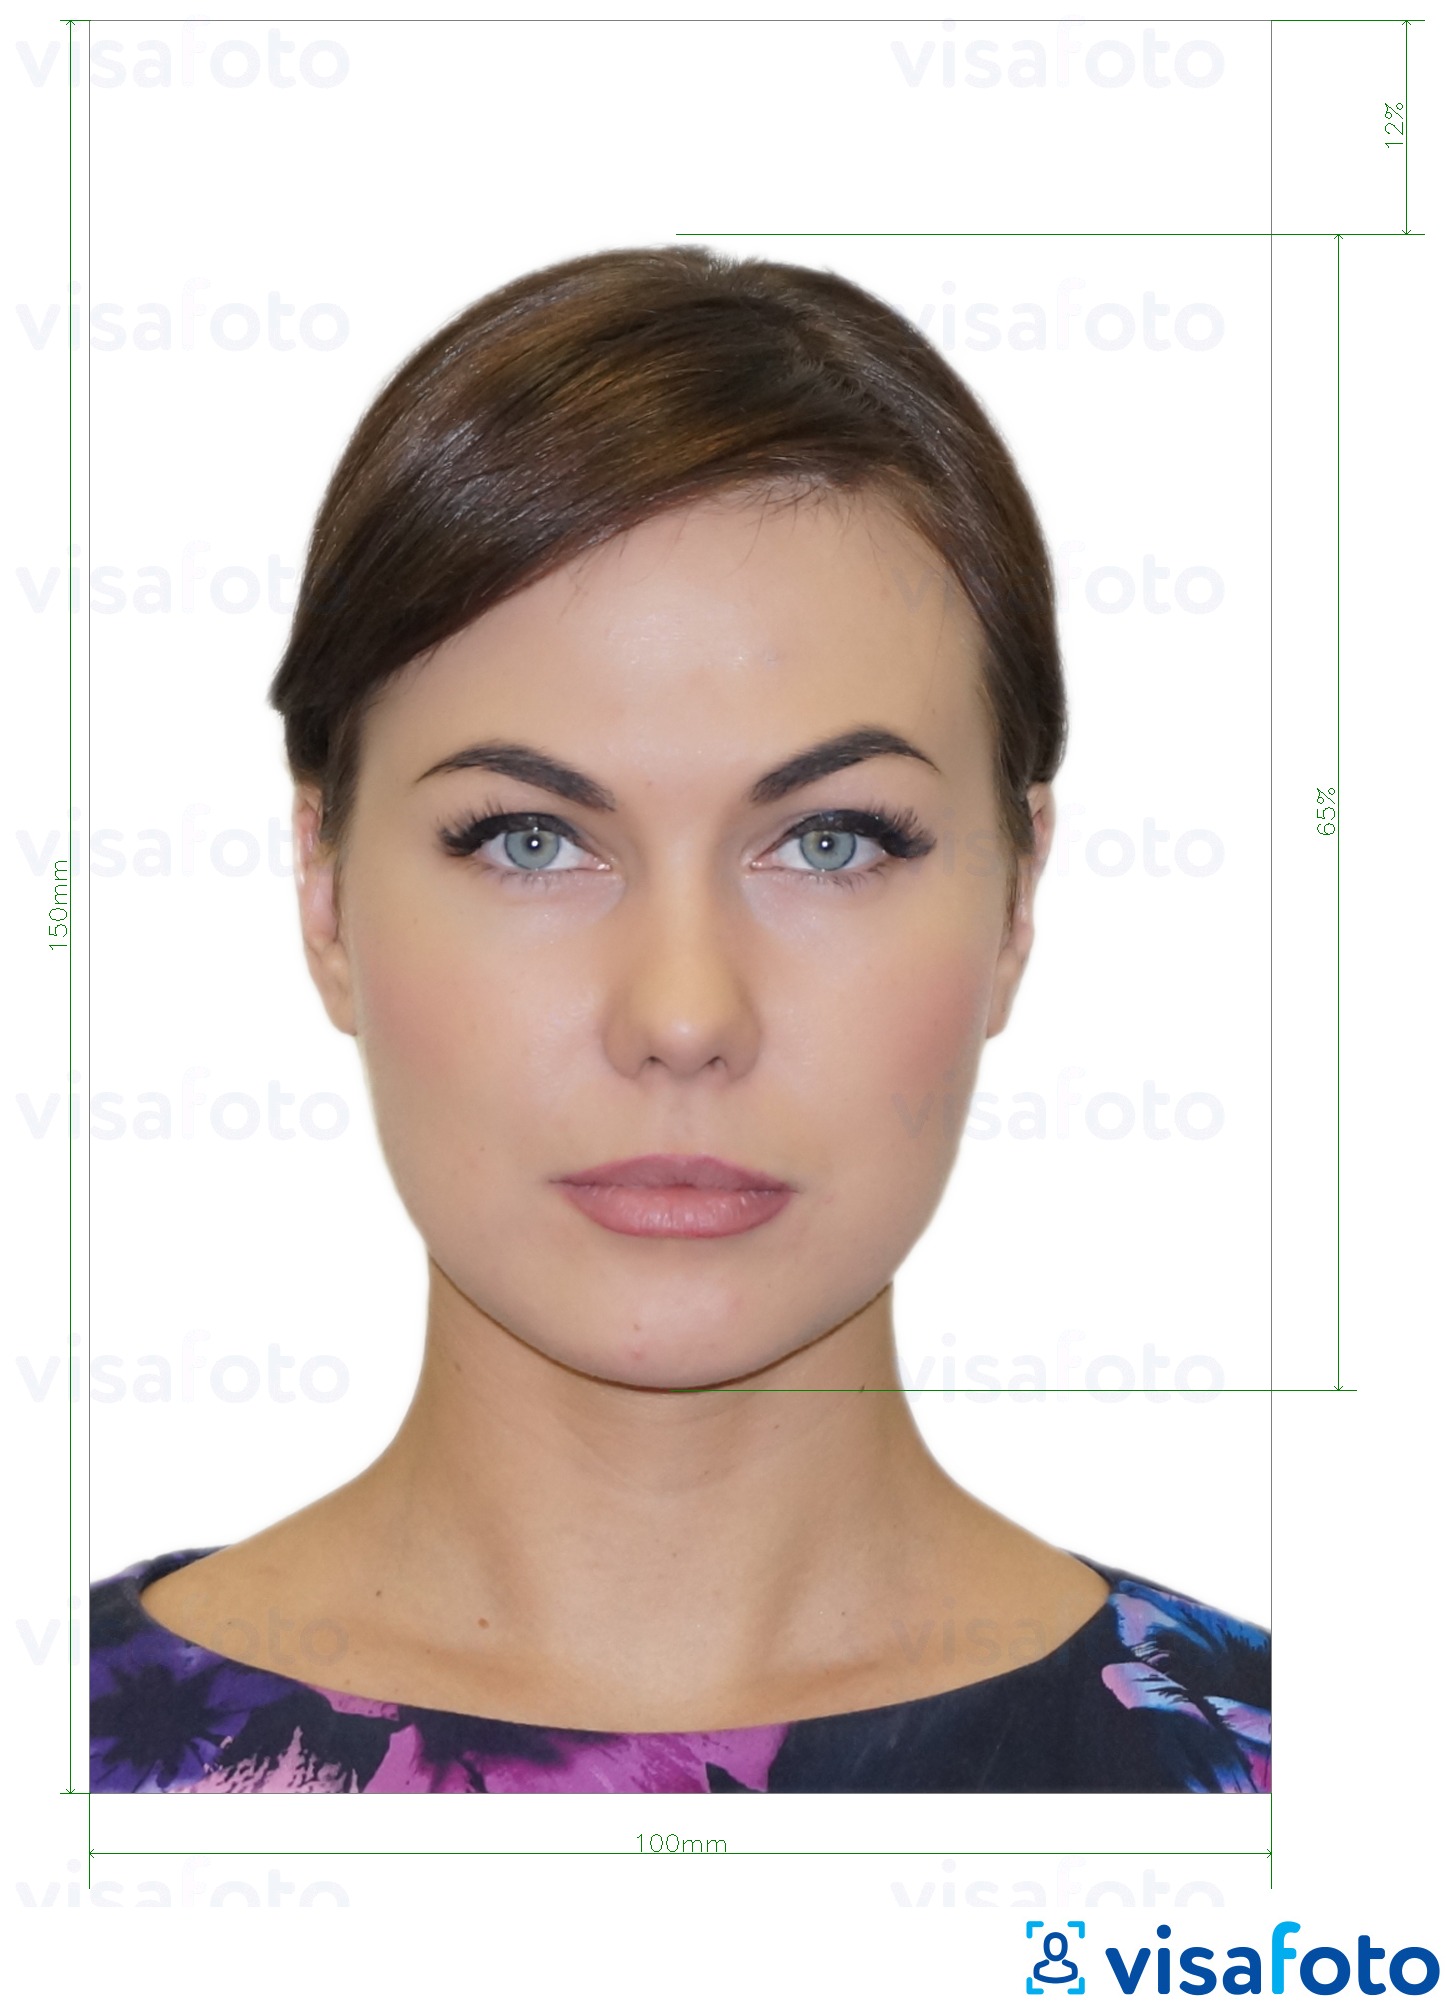 Príklad fotografie pre Občiansky preukaz Moldavska (Buletin de identitate) 10x15 cm s presnou špecifikáciou veľkosti